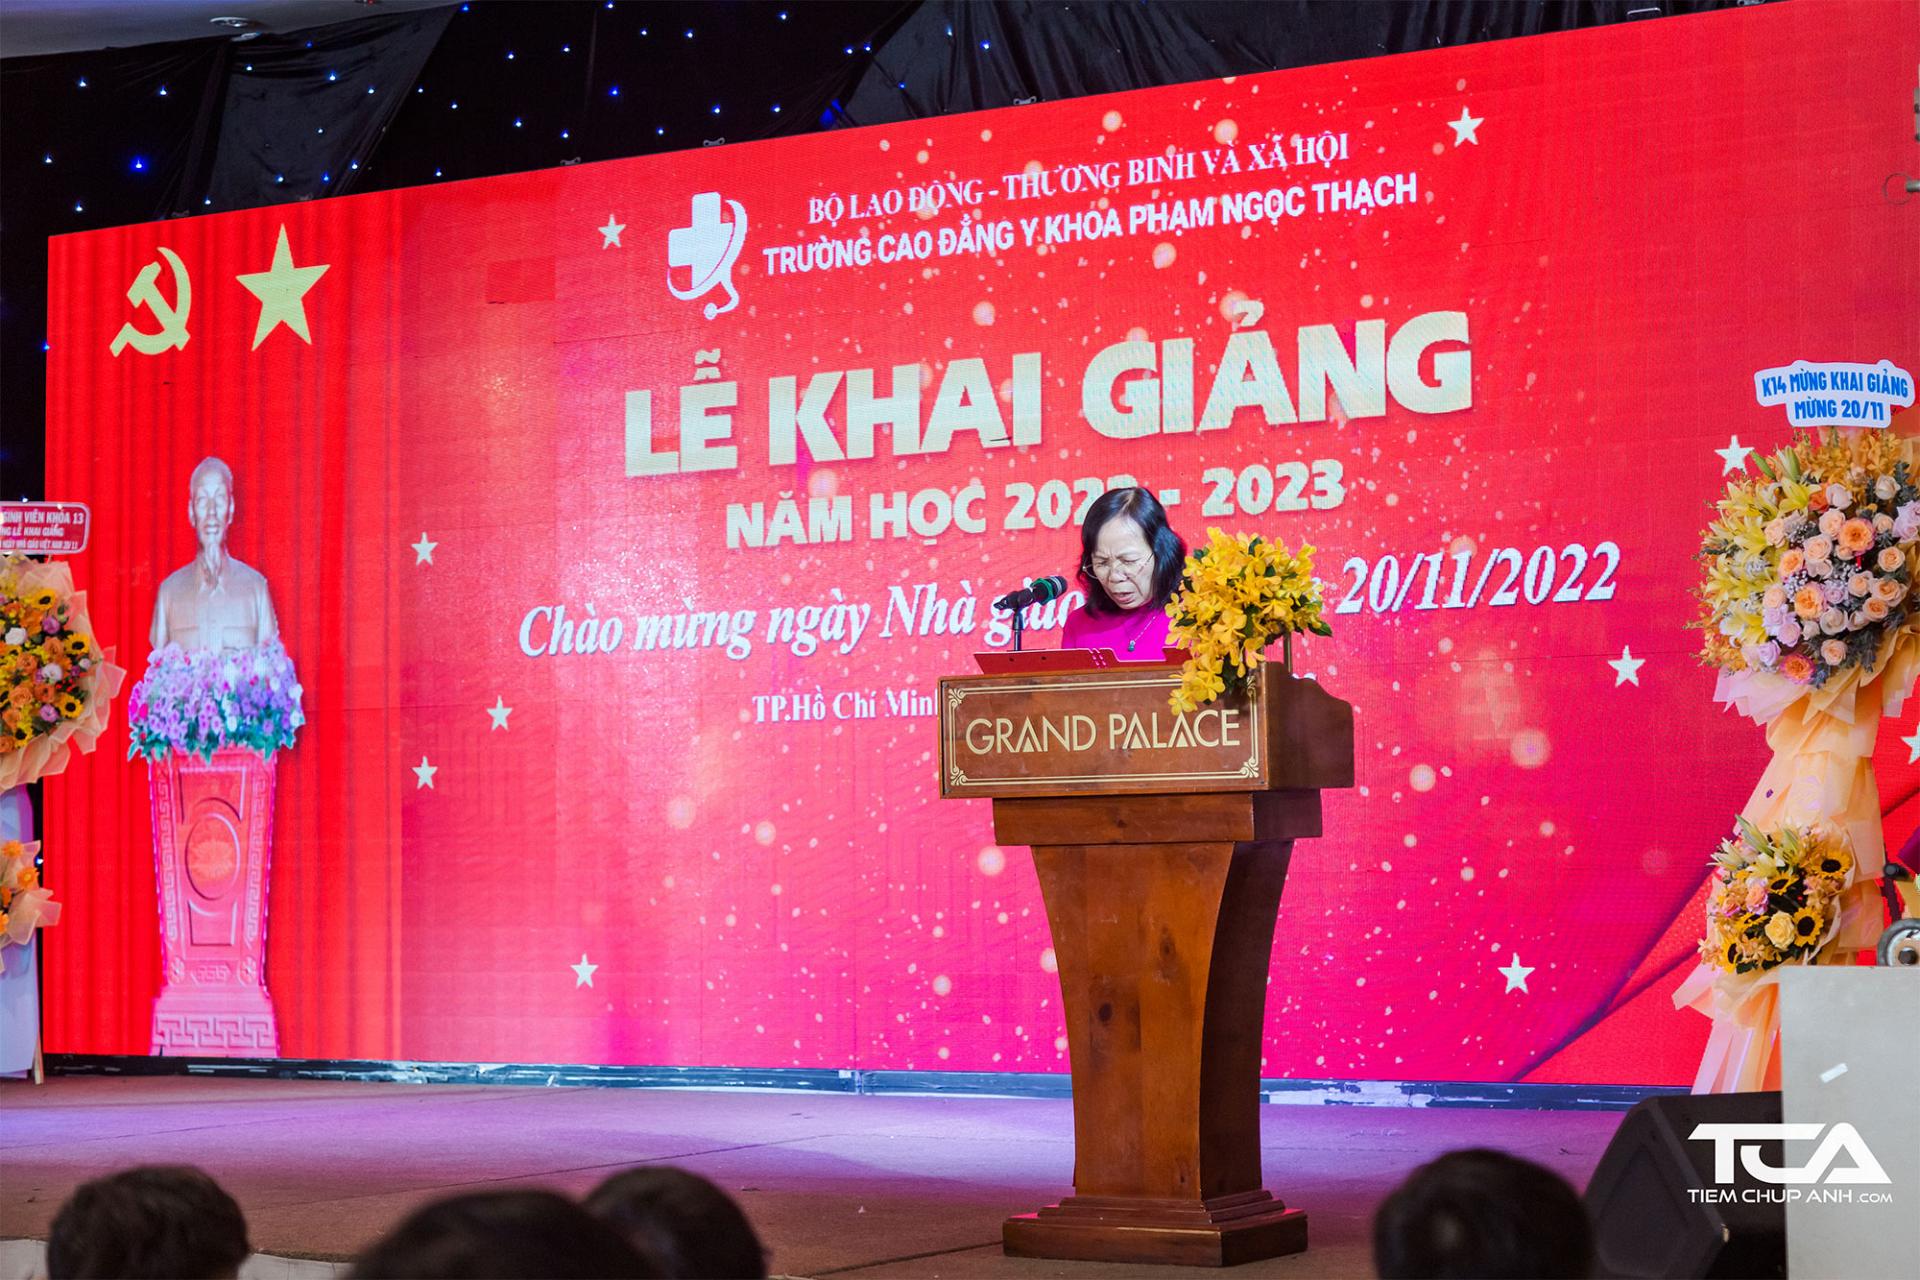  Hiệu trưởng Trường Cao đẳng Y khoa Phạm Ngọc Thạch đọc diễn văn khai giảng